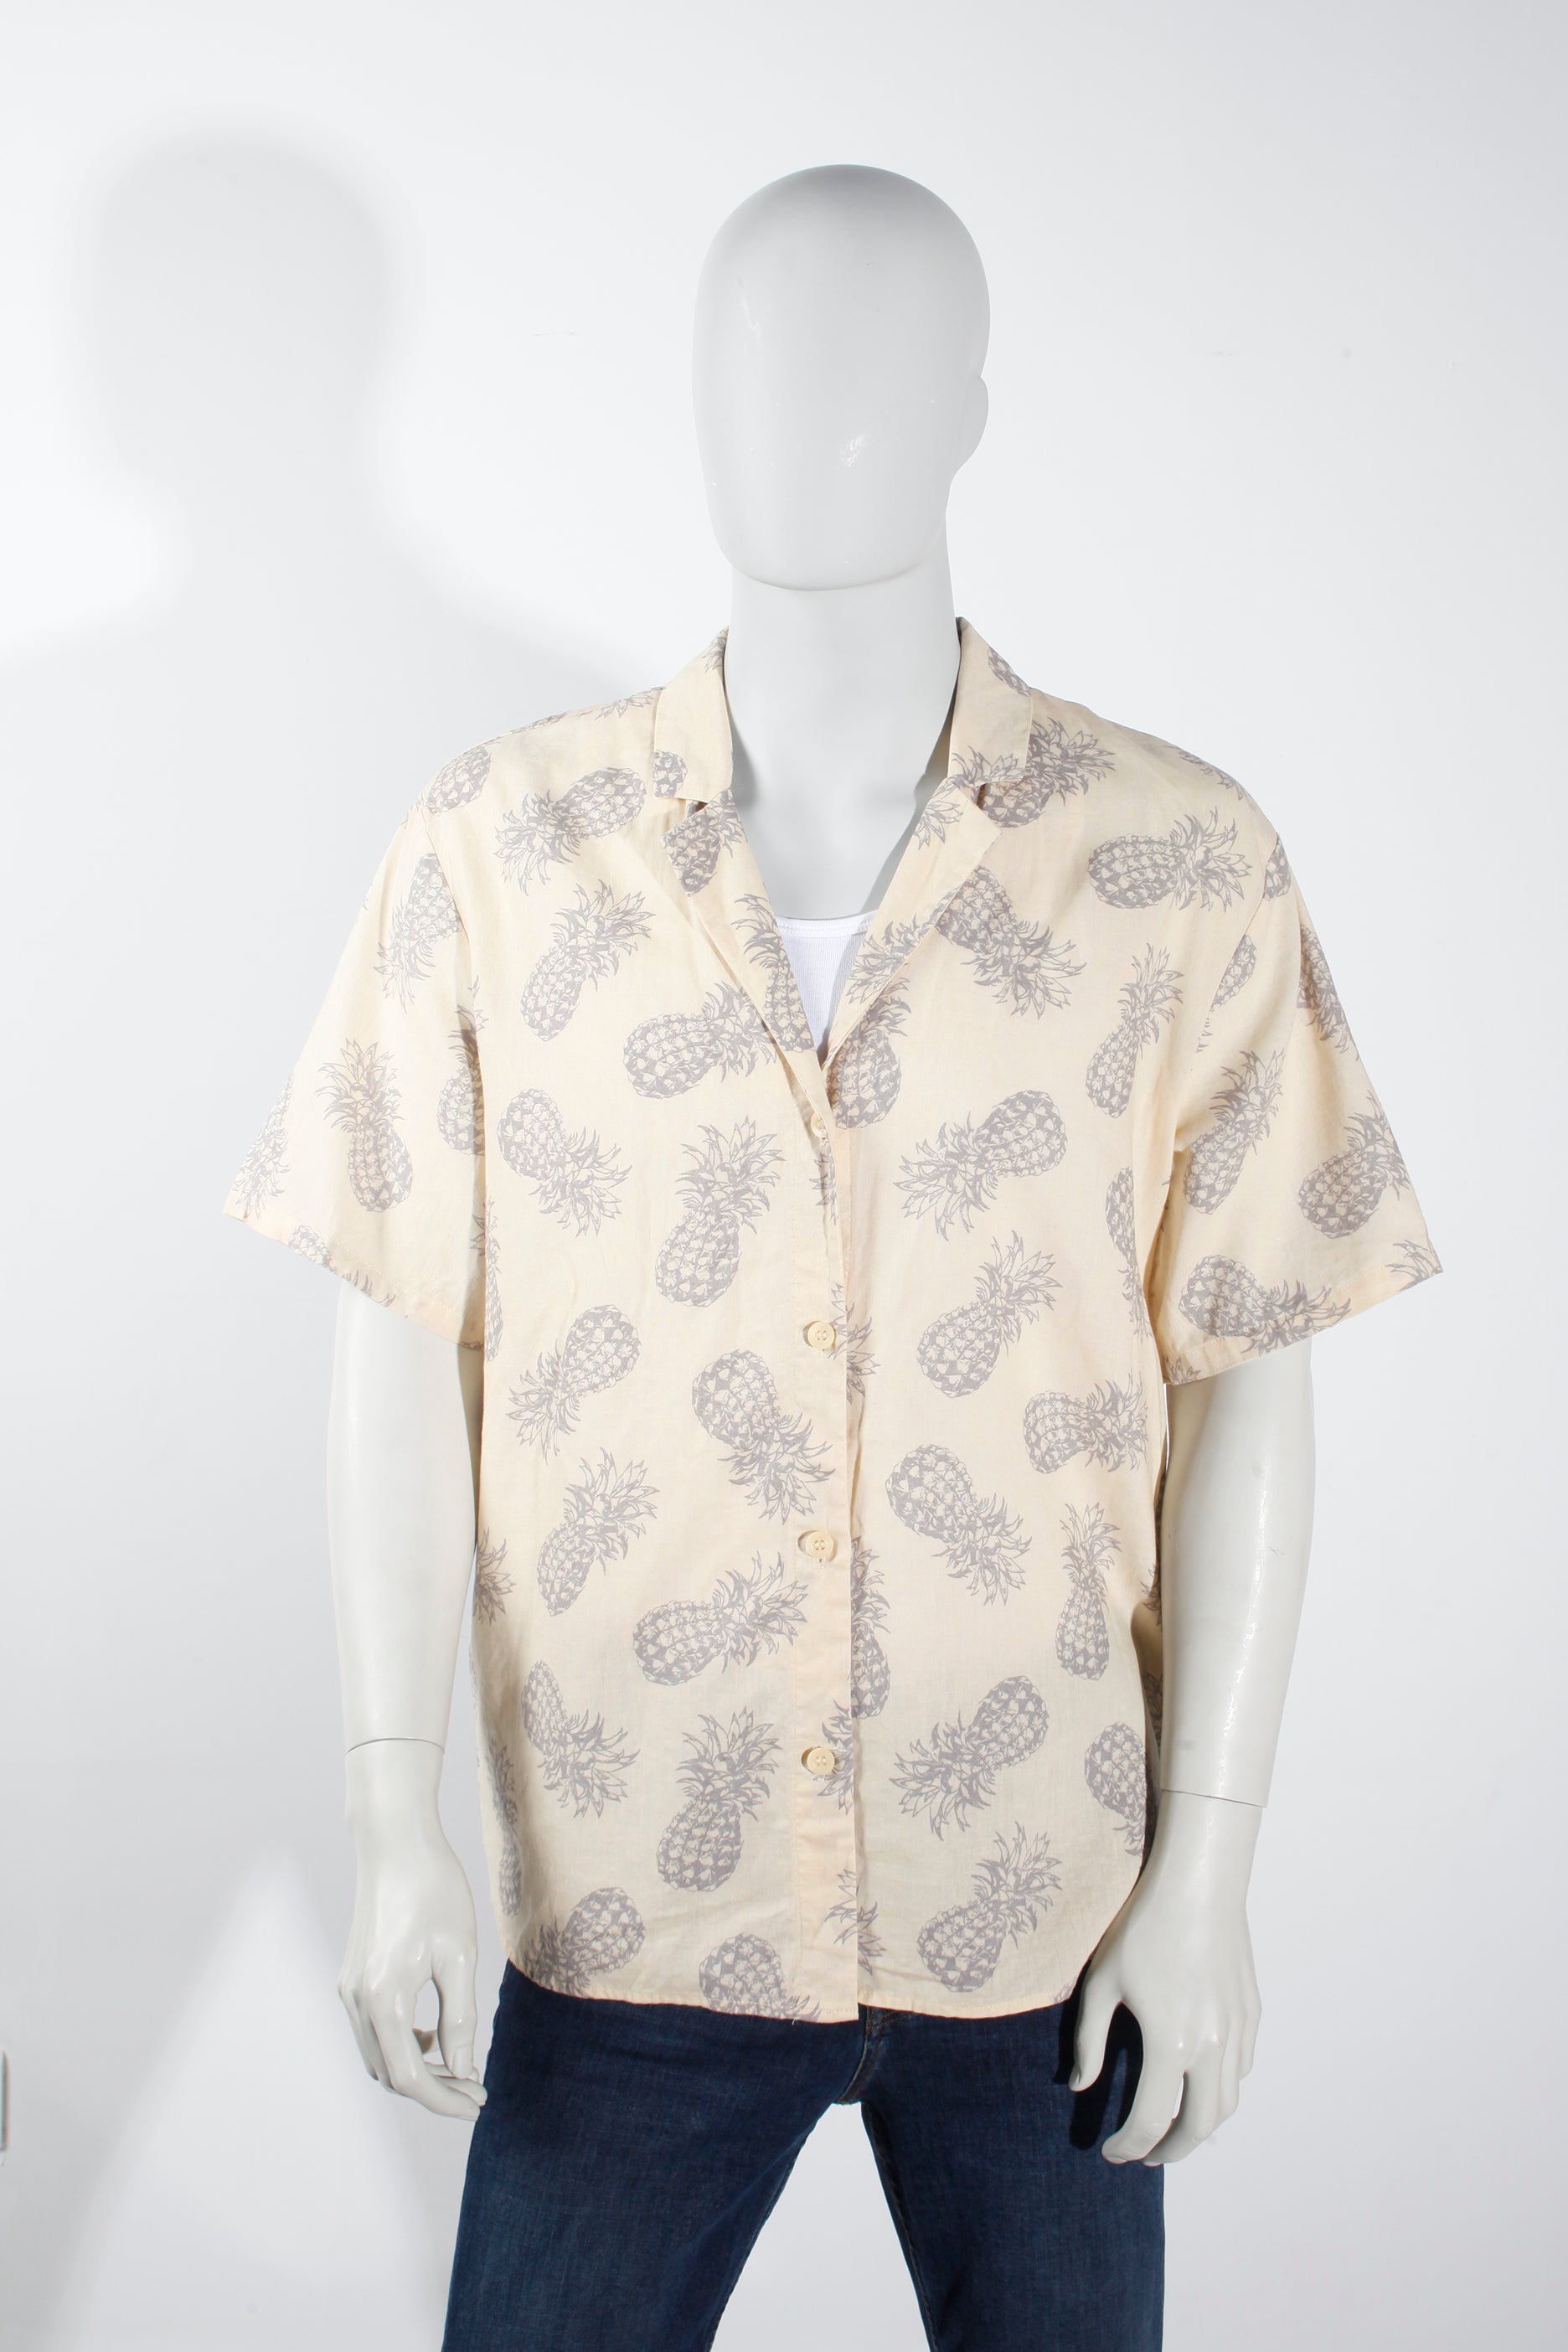 Yellow Pineapple Print Shirt (Medium)